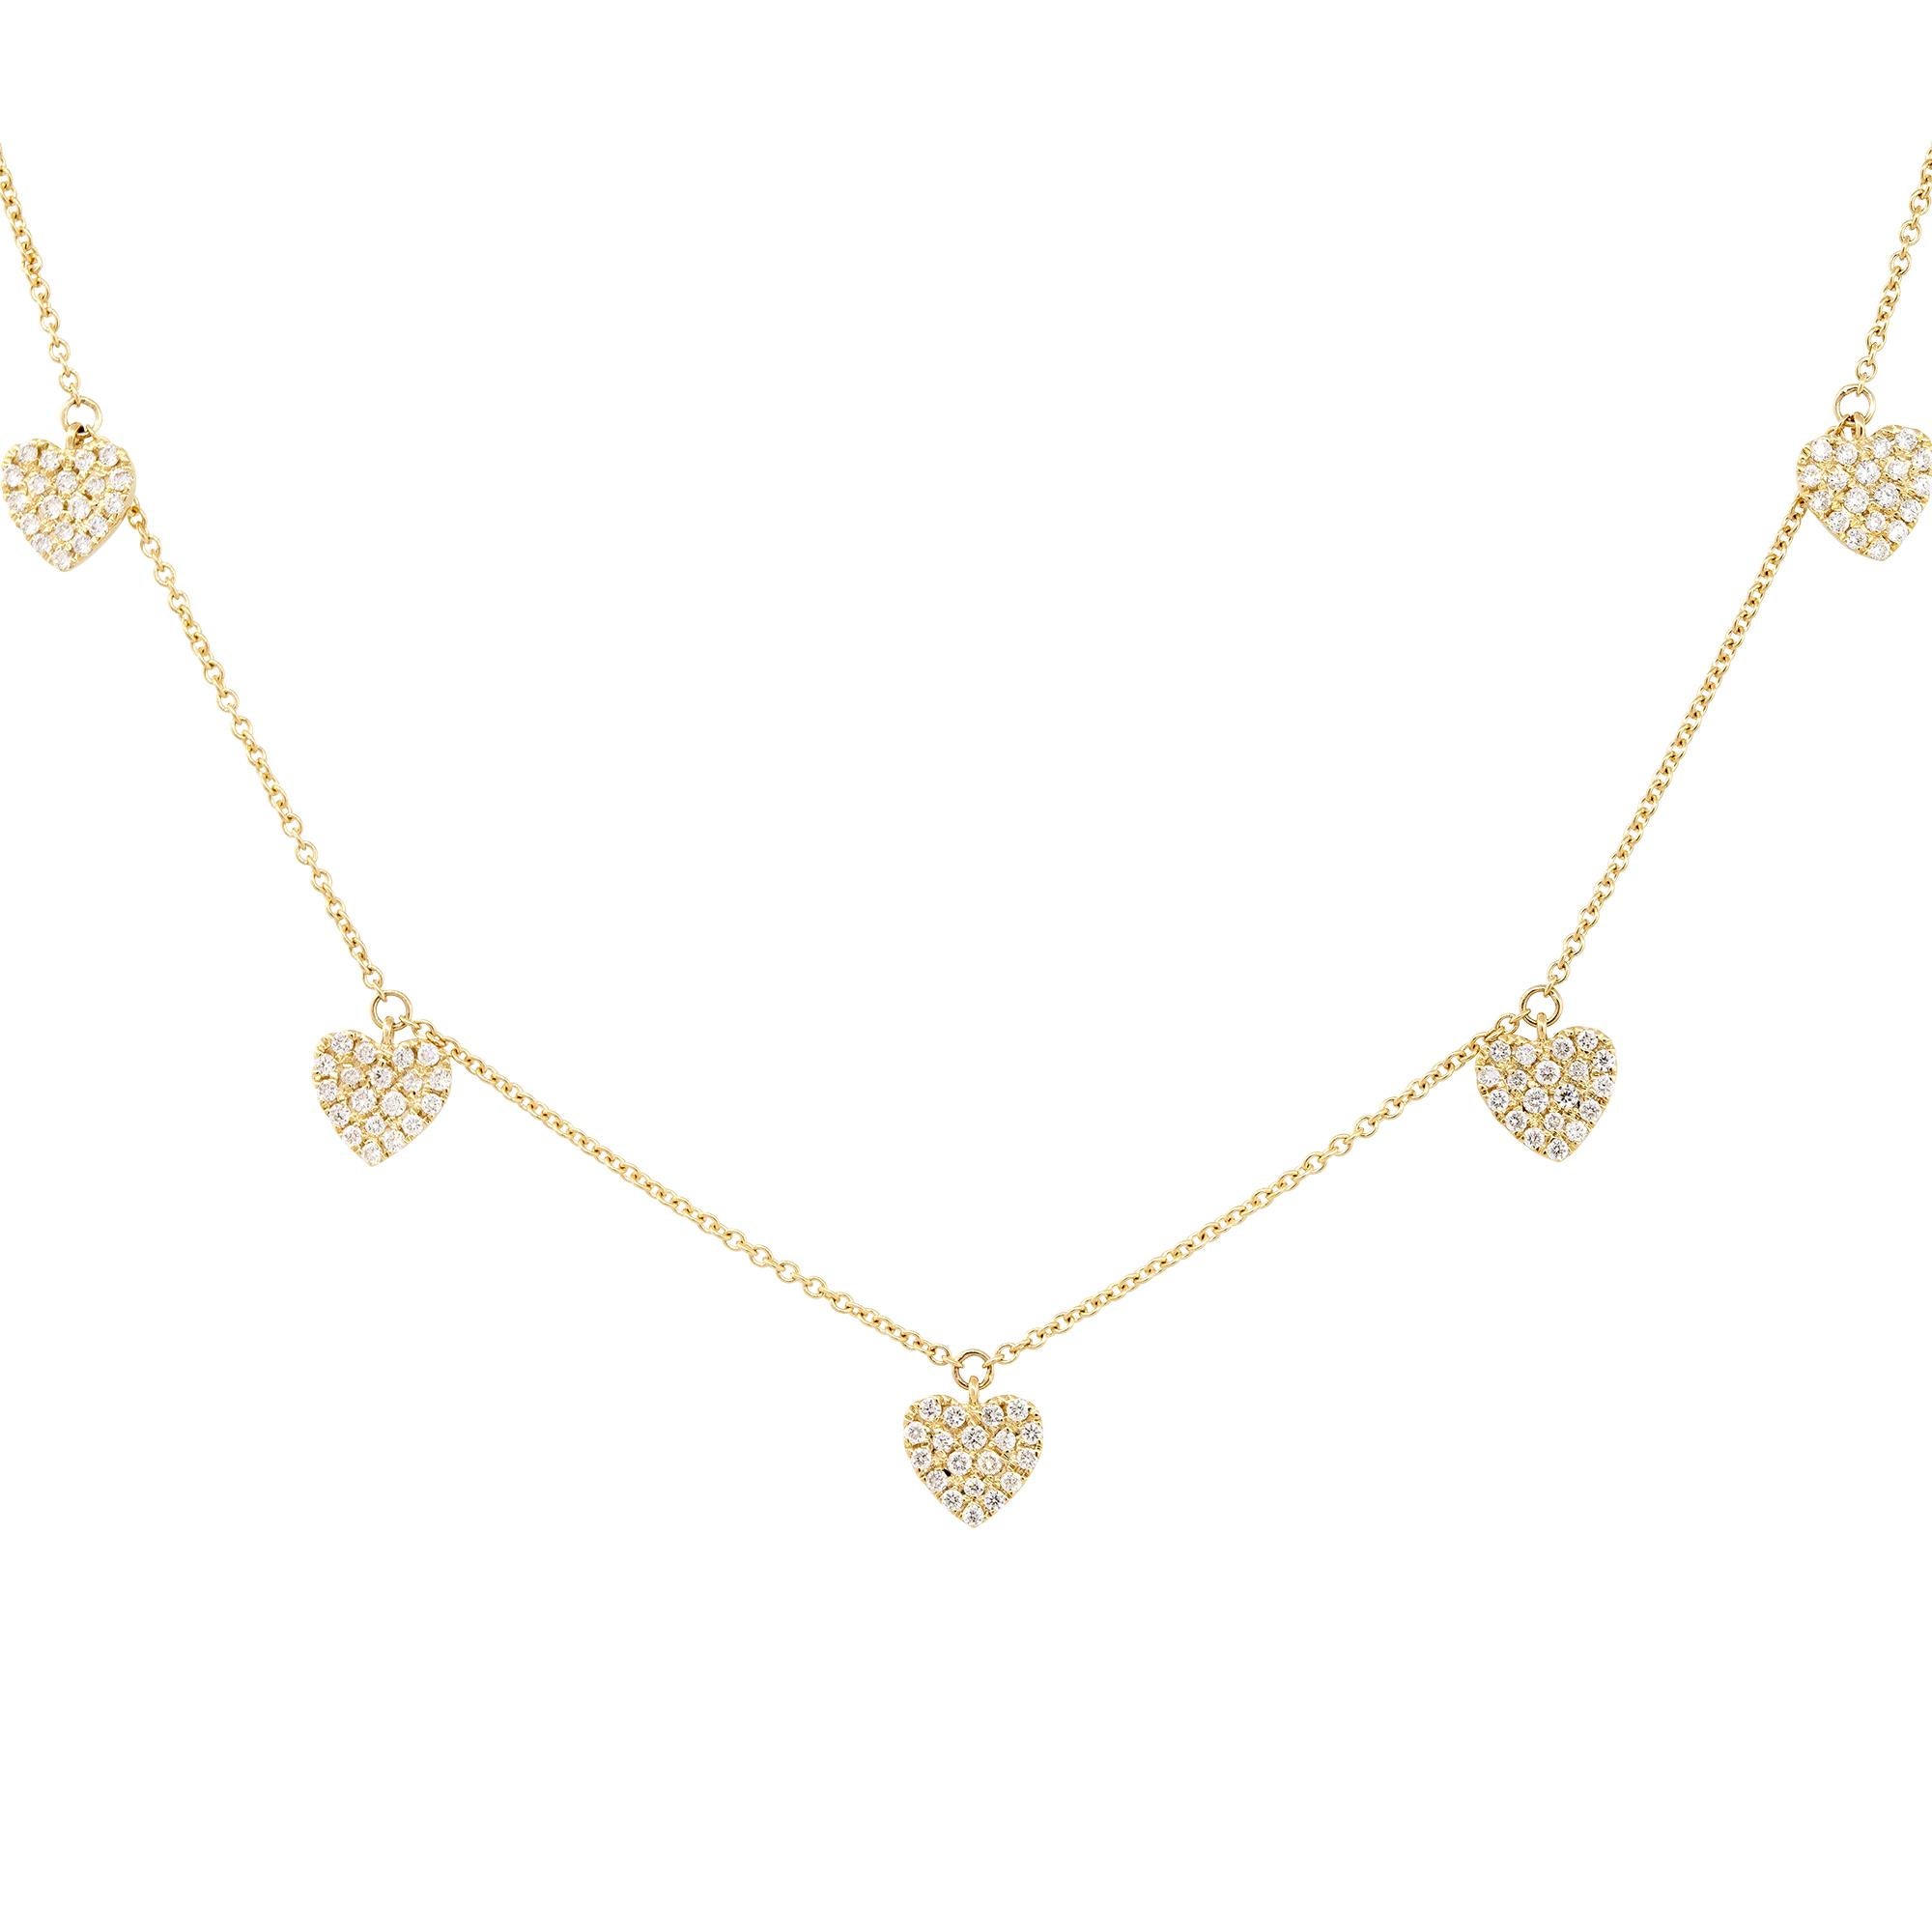 Diese 14 Karat Diamant-Halskette mit Herz ist die perfekte Ergänzung für Ihre Schmucksammlung! Diese Halskette kann mit anderen Schmuckstücken getragen werden, aber auch für sich alleine stehen, was sie zu einem sehr vielseitigen Schmuckstück macht.